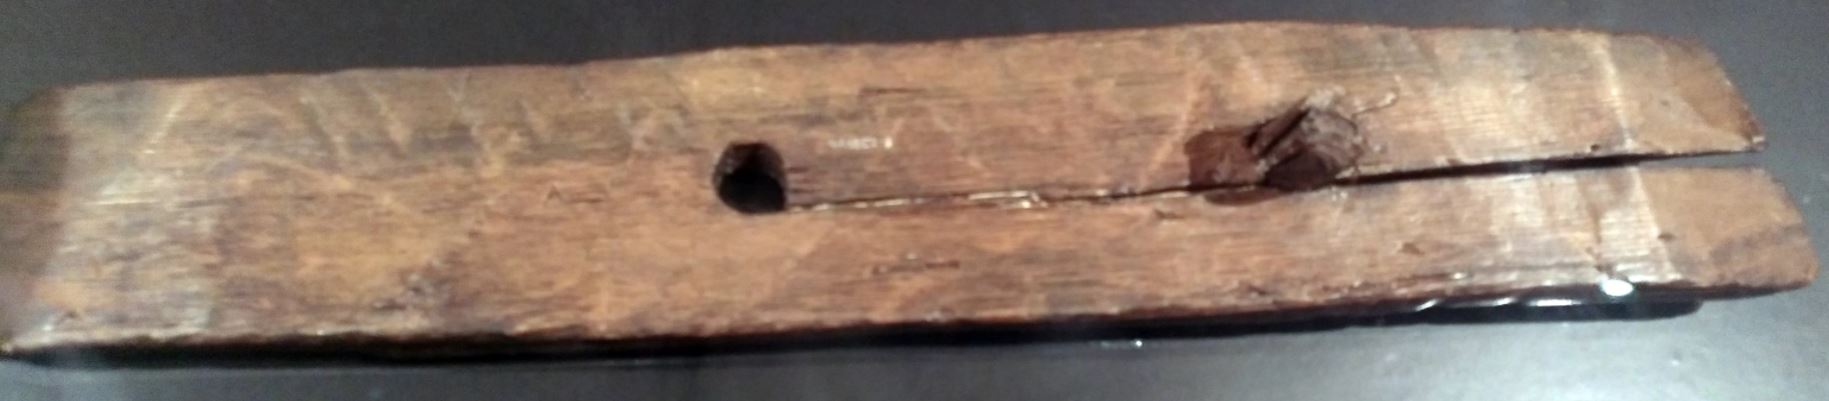 Este fragmento de madera puede ser un parche para botes. Fue encontrado en L'Anse aux Meadows, el único asentamiento vikingo confirmado en América del Norte. Es probable que los barcos vikingos navegaran desde L'Anse aux Meadows hasta Hop